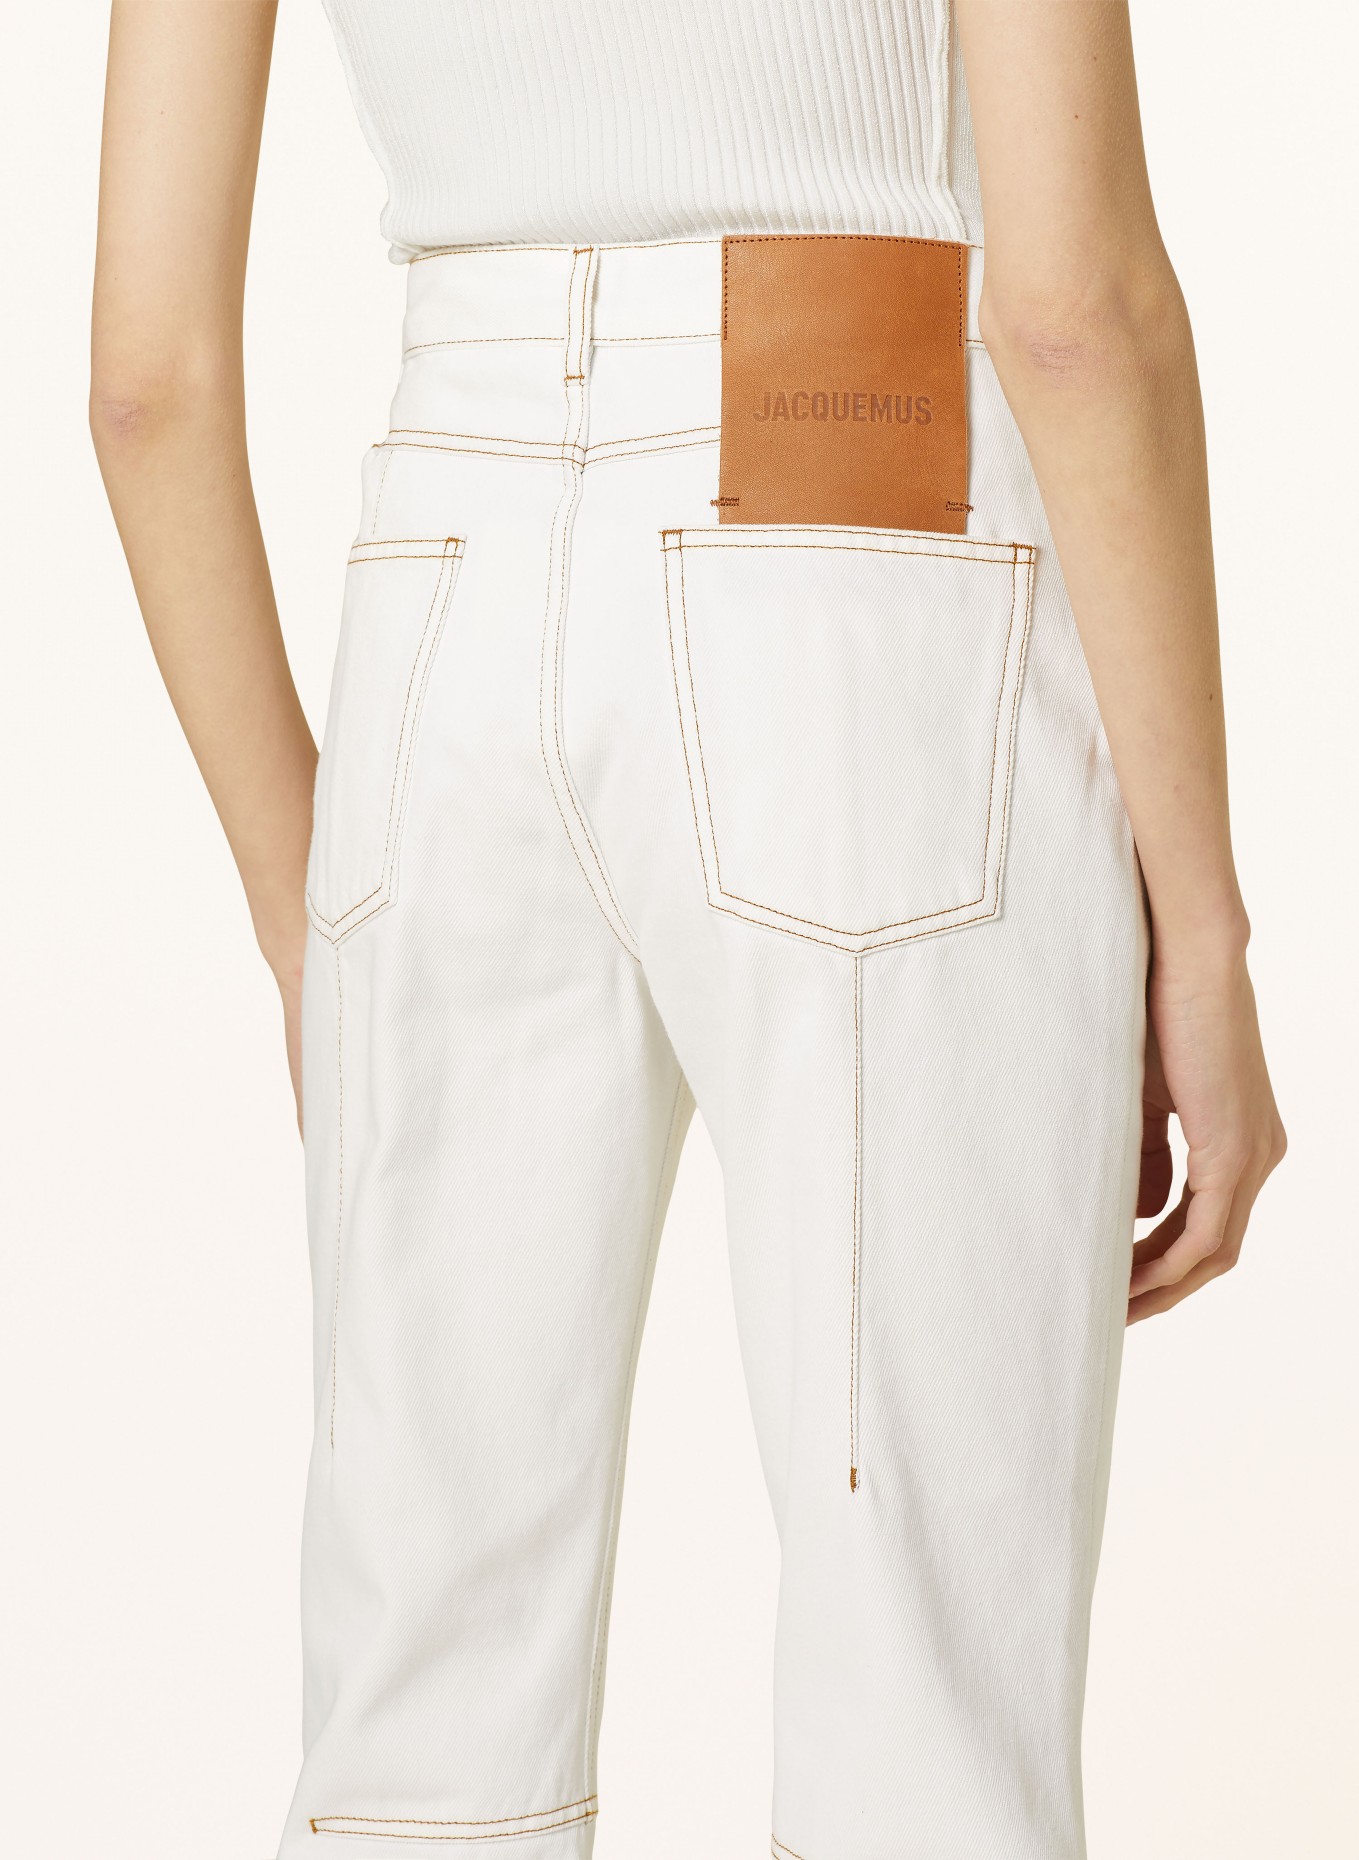 JACQUEMUS 7/8 jeans LE DE-NÎMES COURT JEANS, Color: 11C OFF-WHITE/TABAC (Image 5)